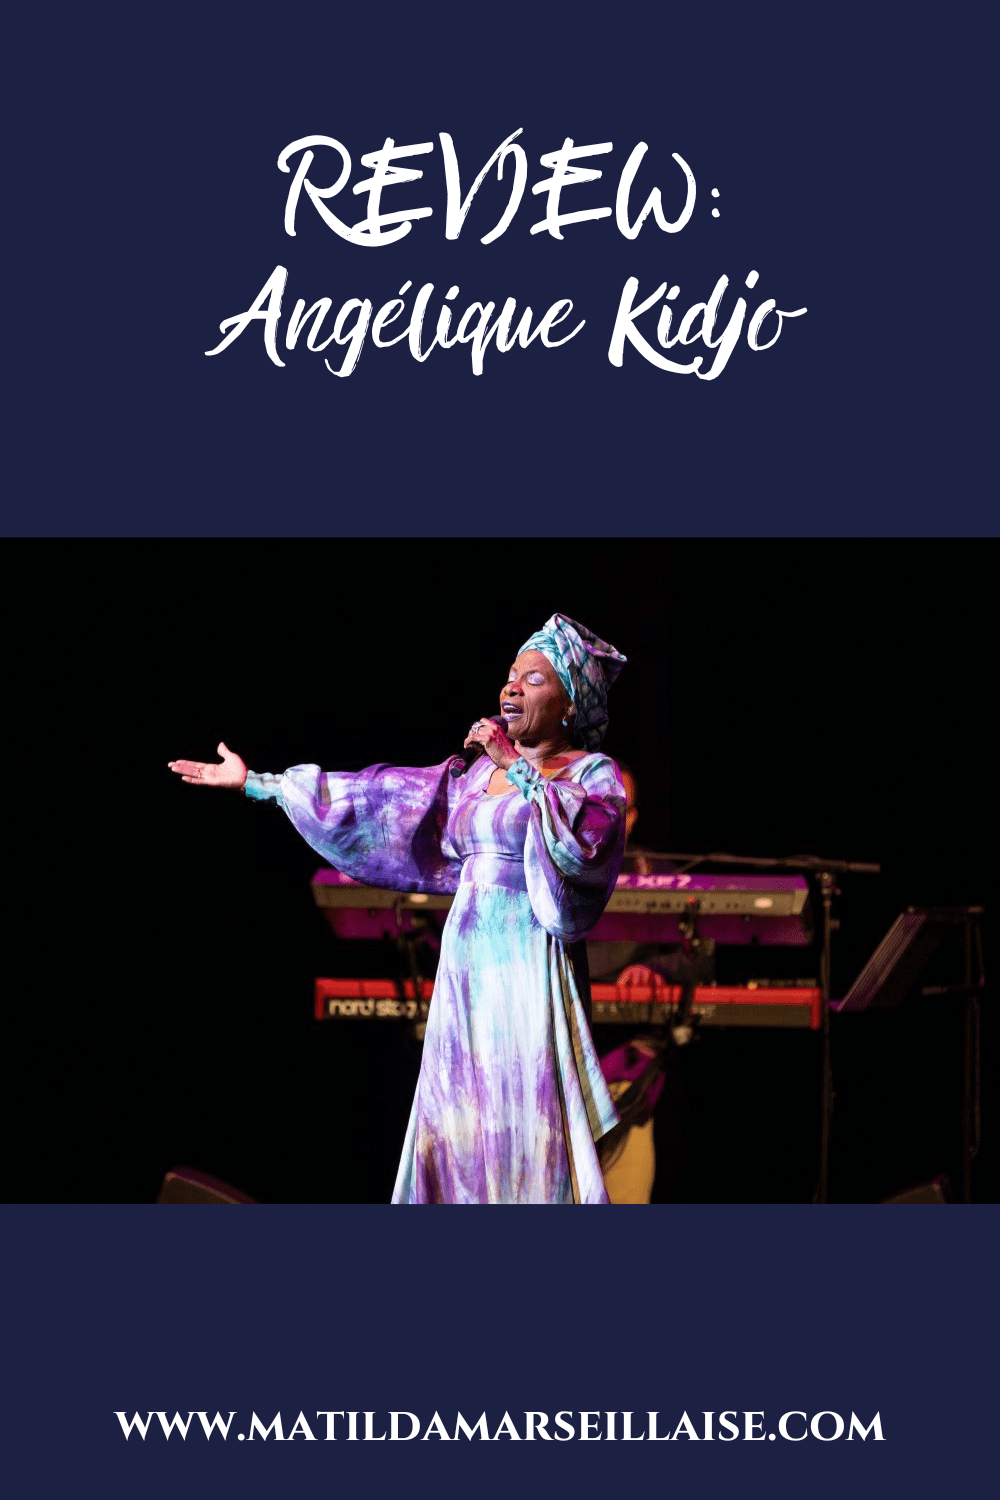 Angélique Kidjo Image: Andrew Beveridge